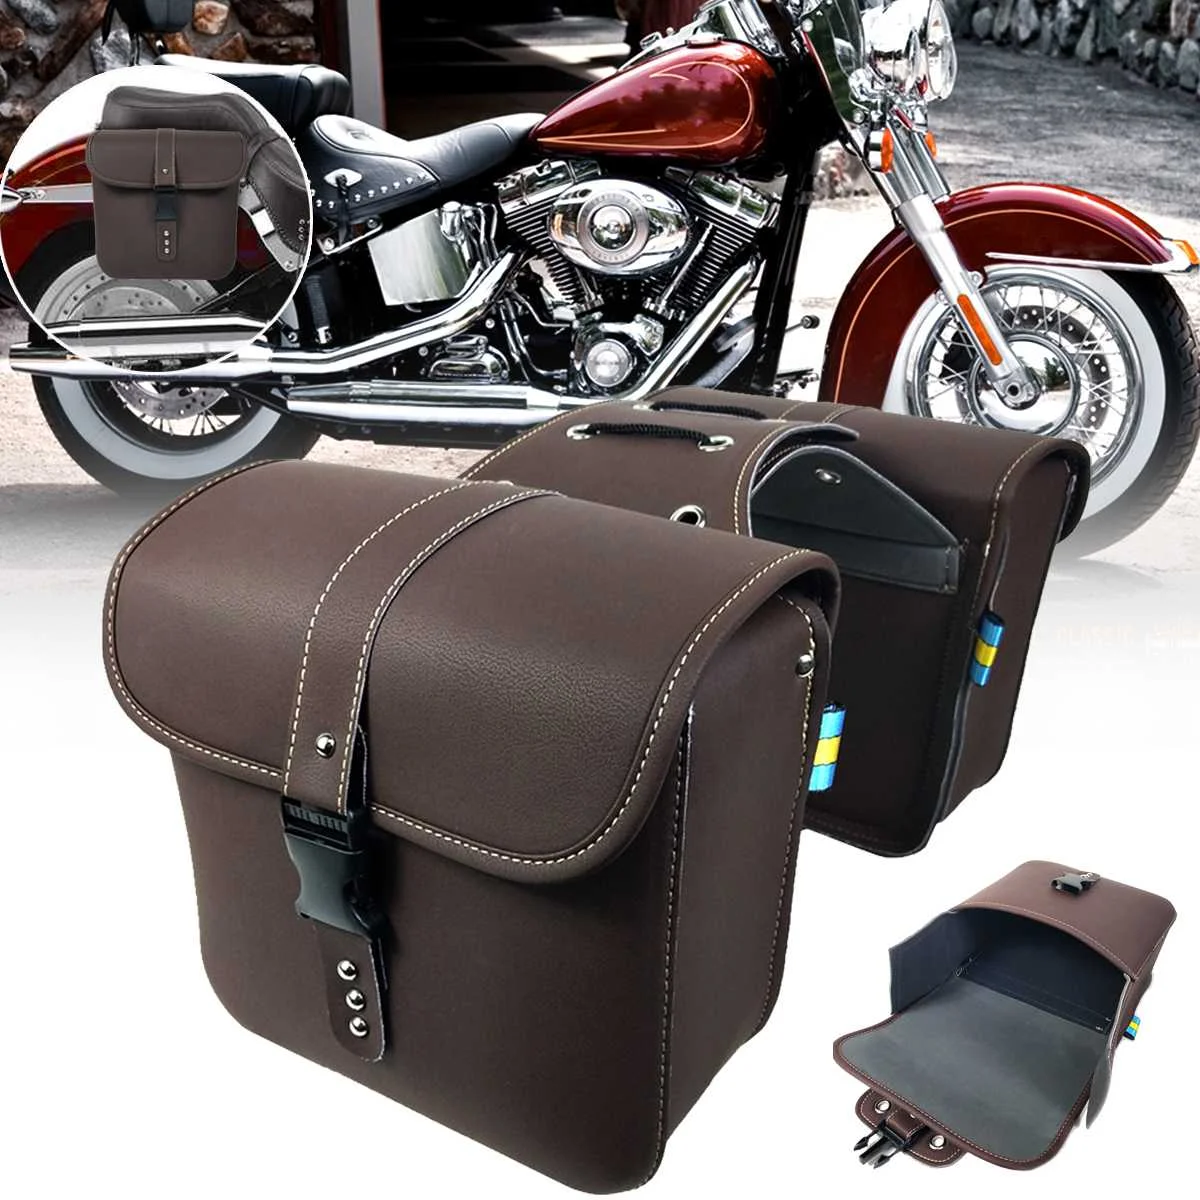 

Мотоциклетные седельные сумки из искусственной кожи для Кафе Racer, боковая сумка для инструментов, сумка для хранения багажа, коричневая уни...